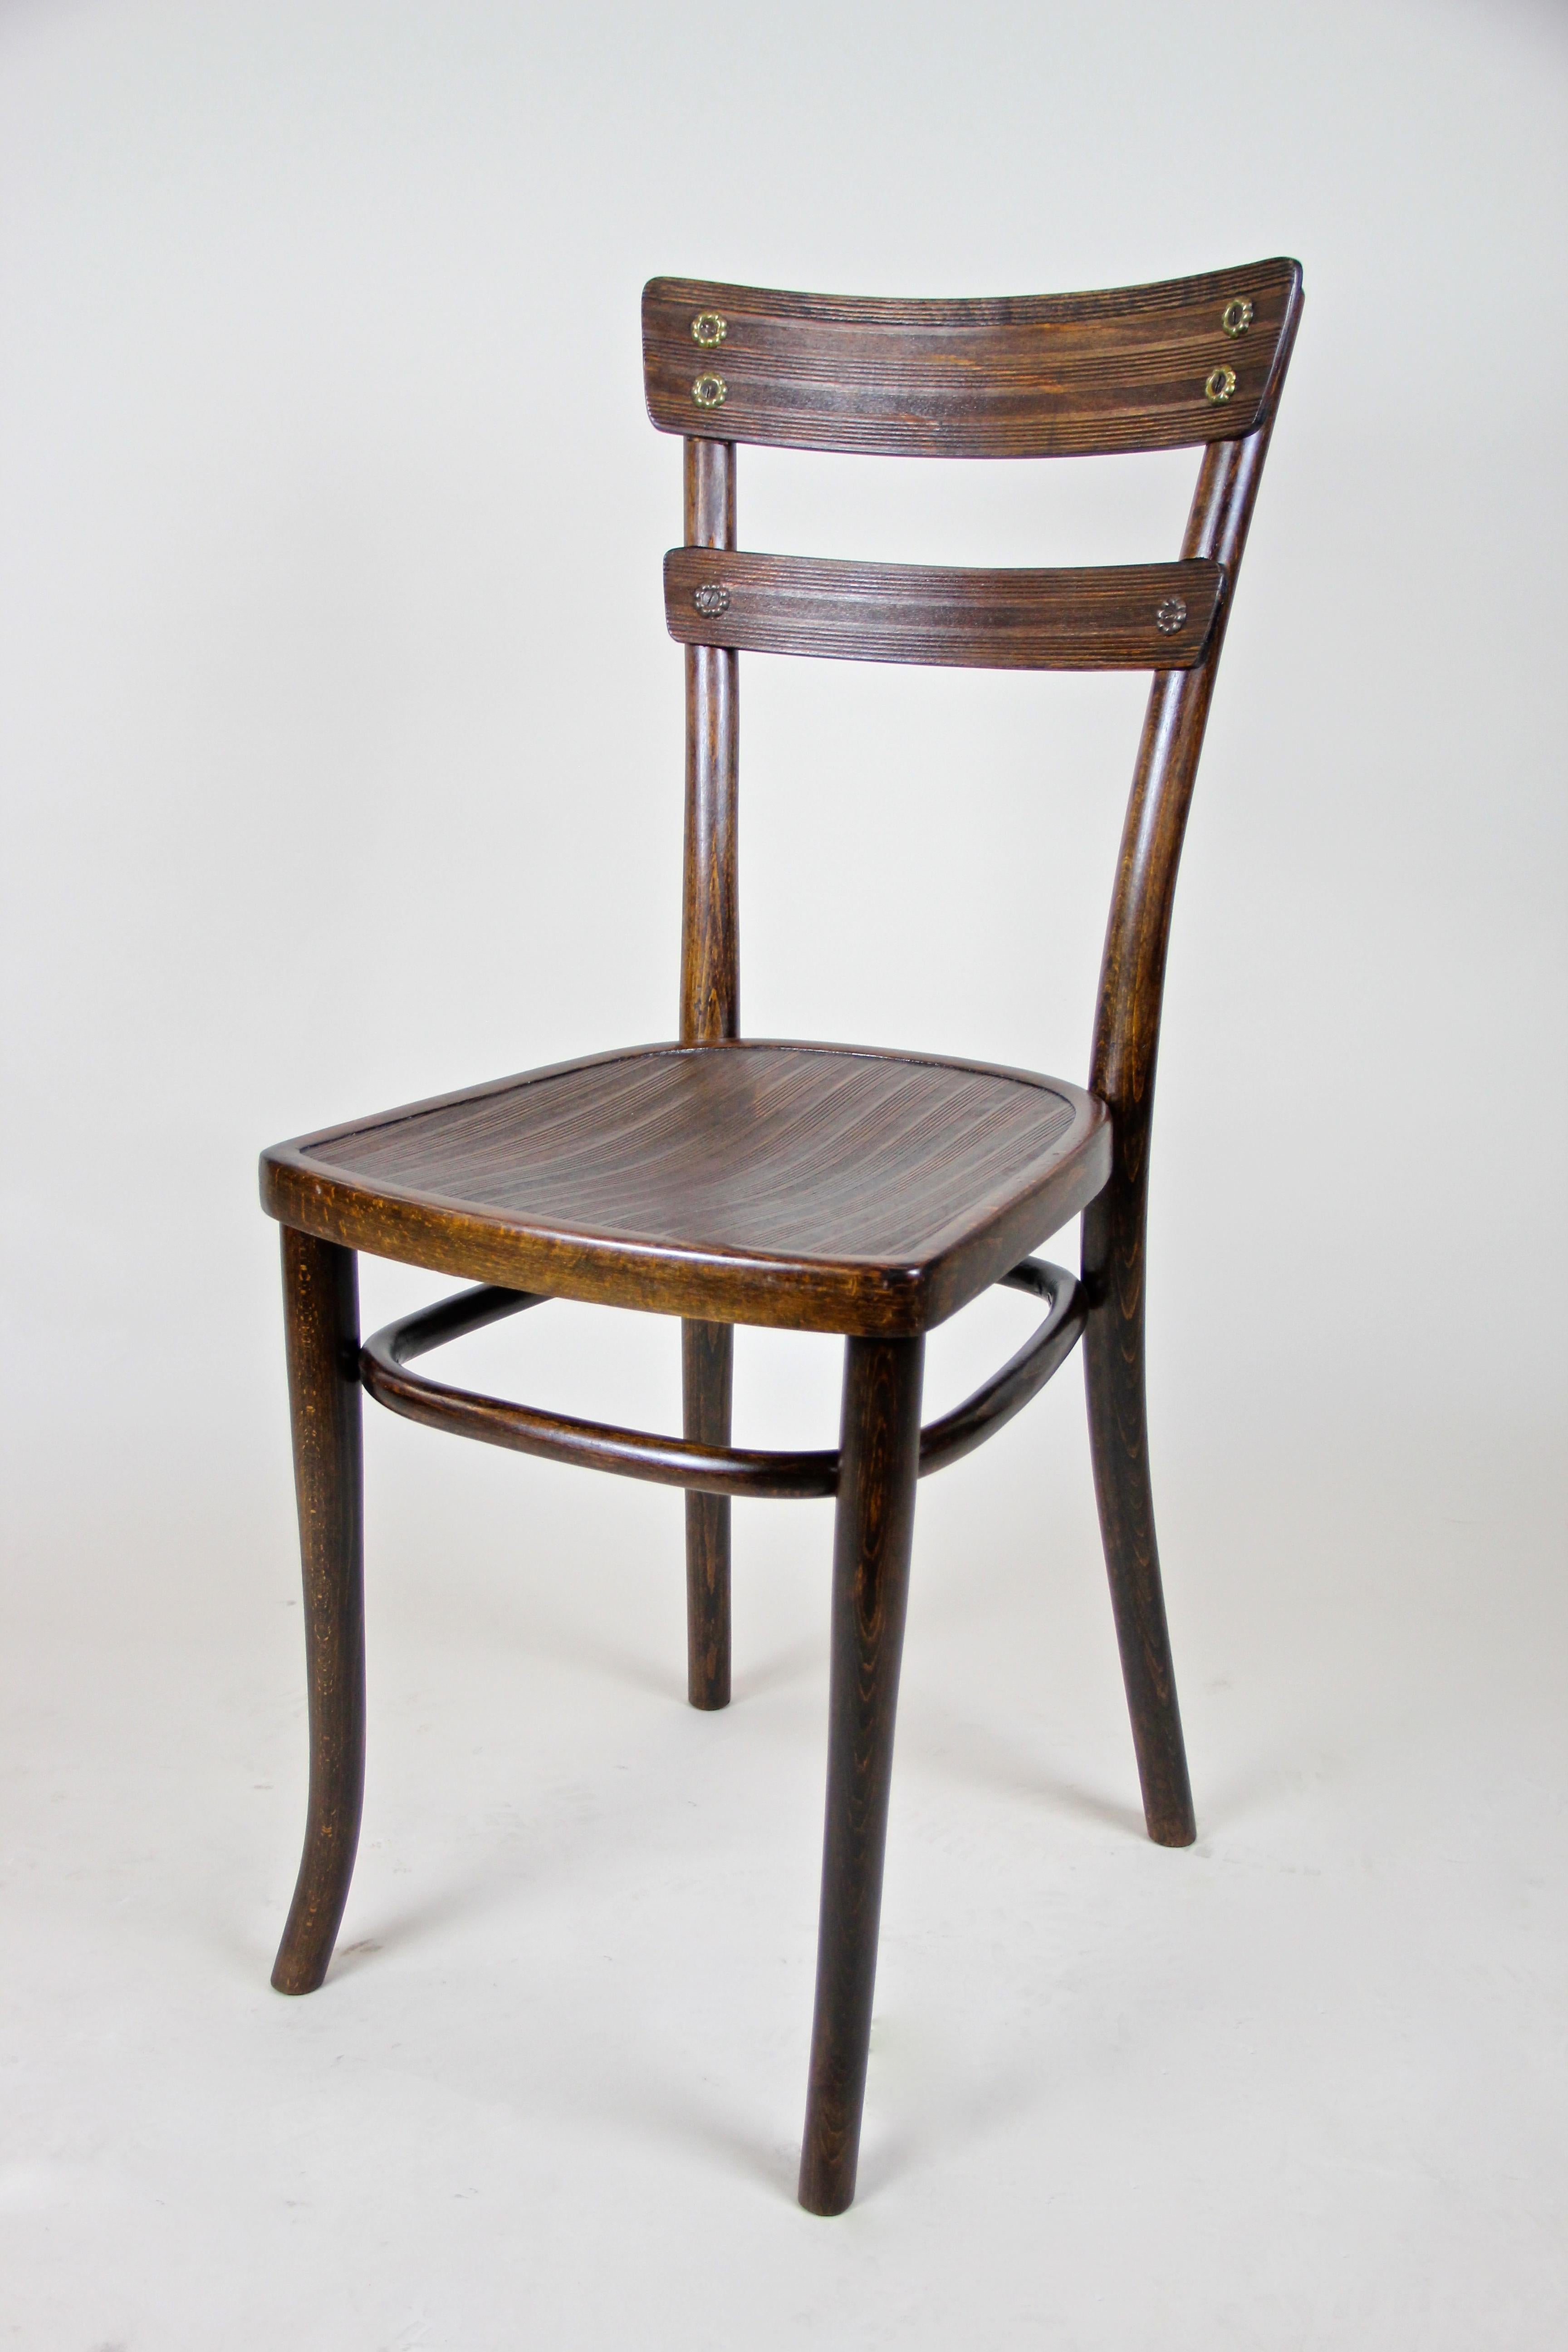 Schöner Satz von drei Jugendstil Thonet Stühlen aus der Wende des 20. Jahrhunderts in Österreich. Diese schlanken, elegant gestalteten Bugholzstühle wurden um 1905 von der berühmten Firma Thonet in Wien hergestellt und zeigen sehr schöne Details wie